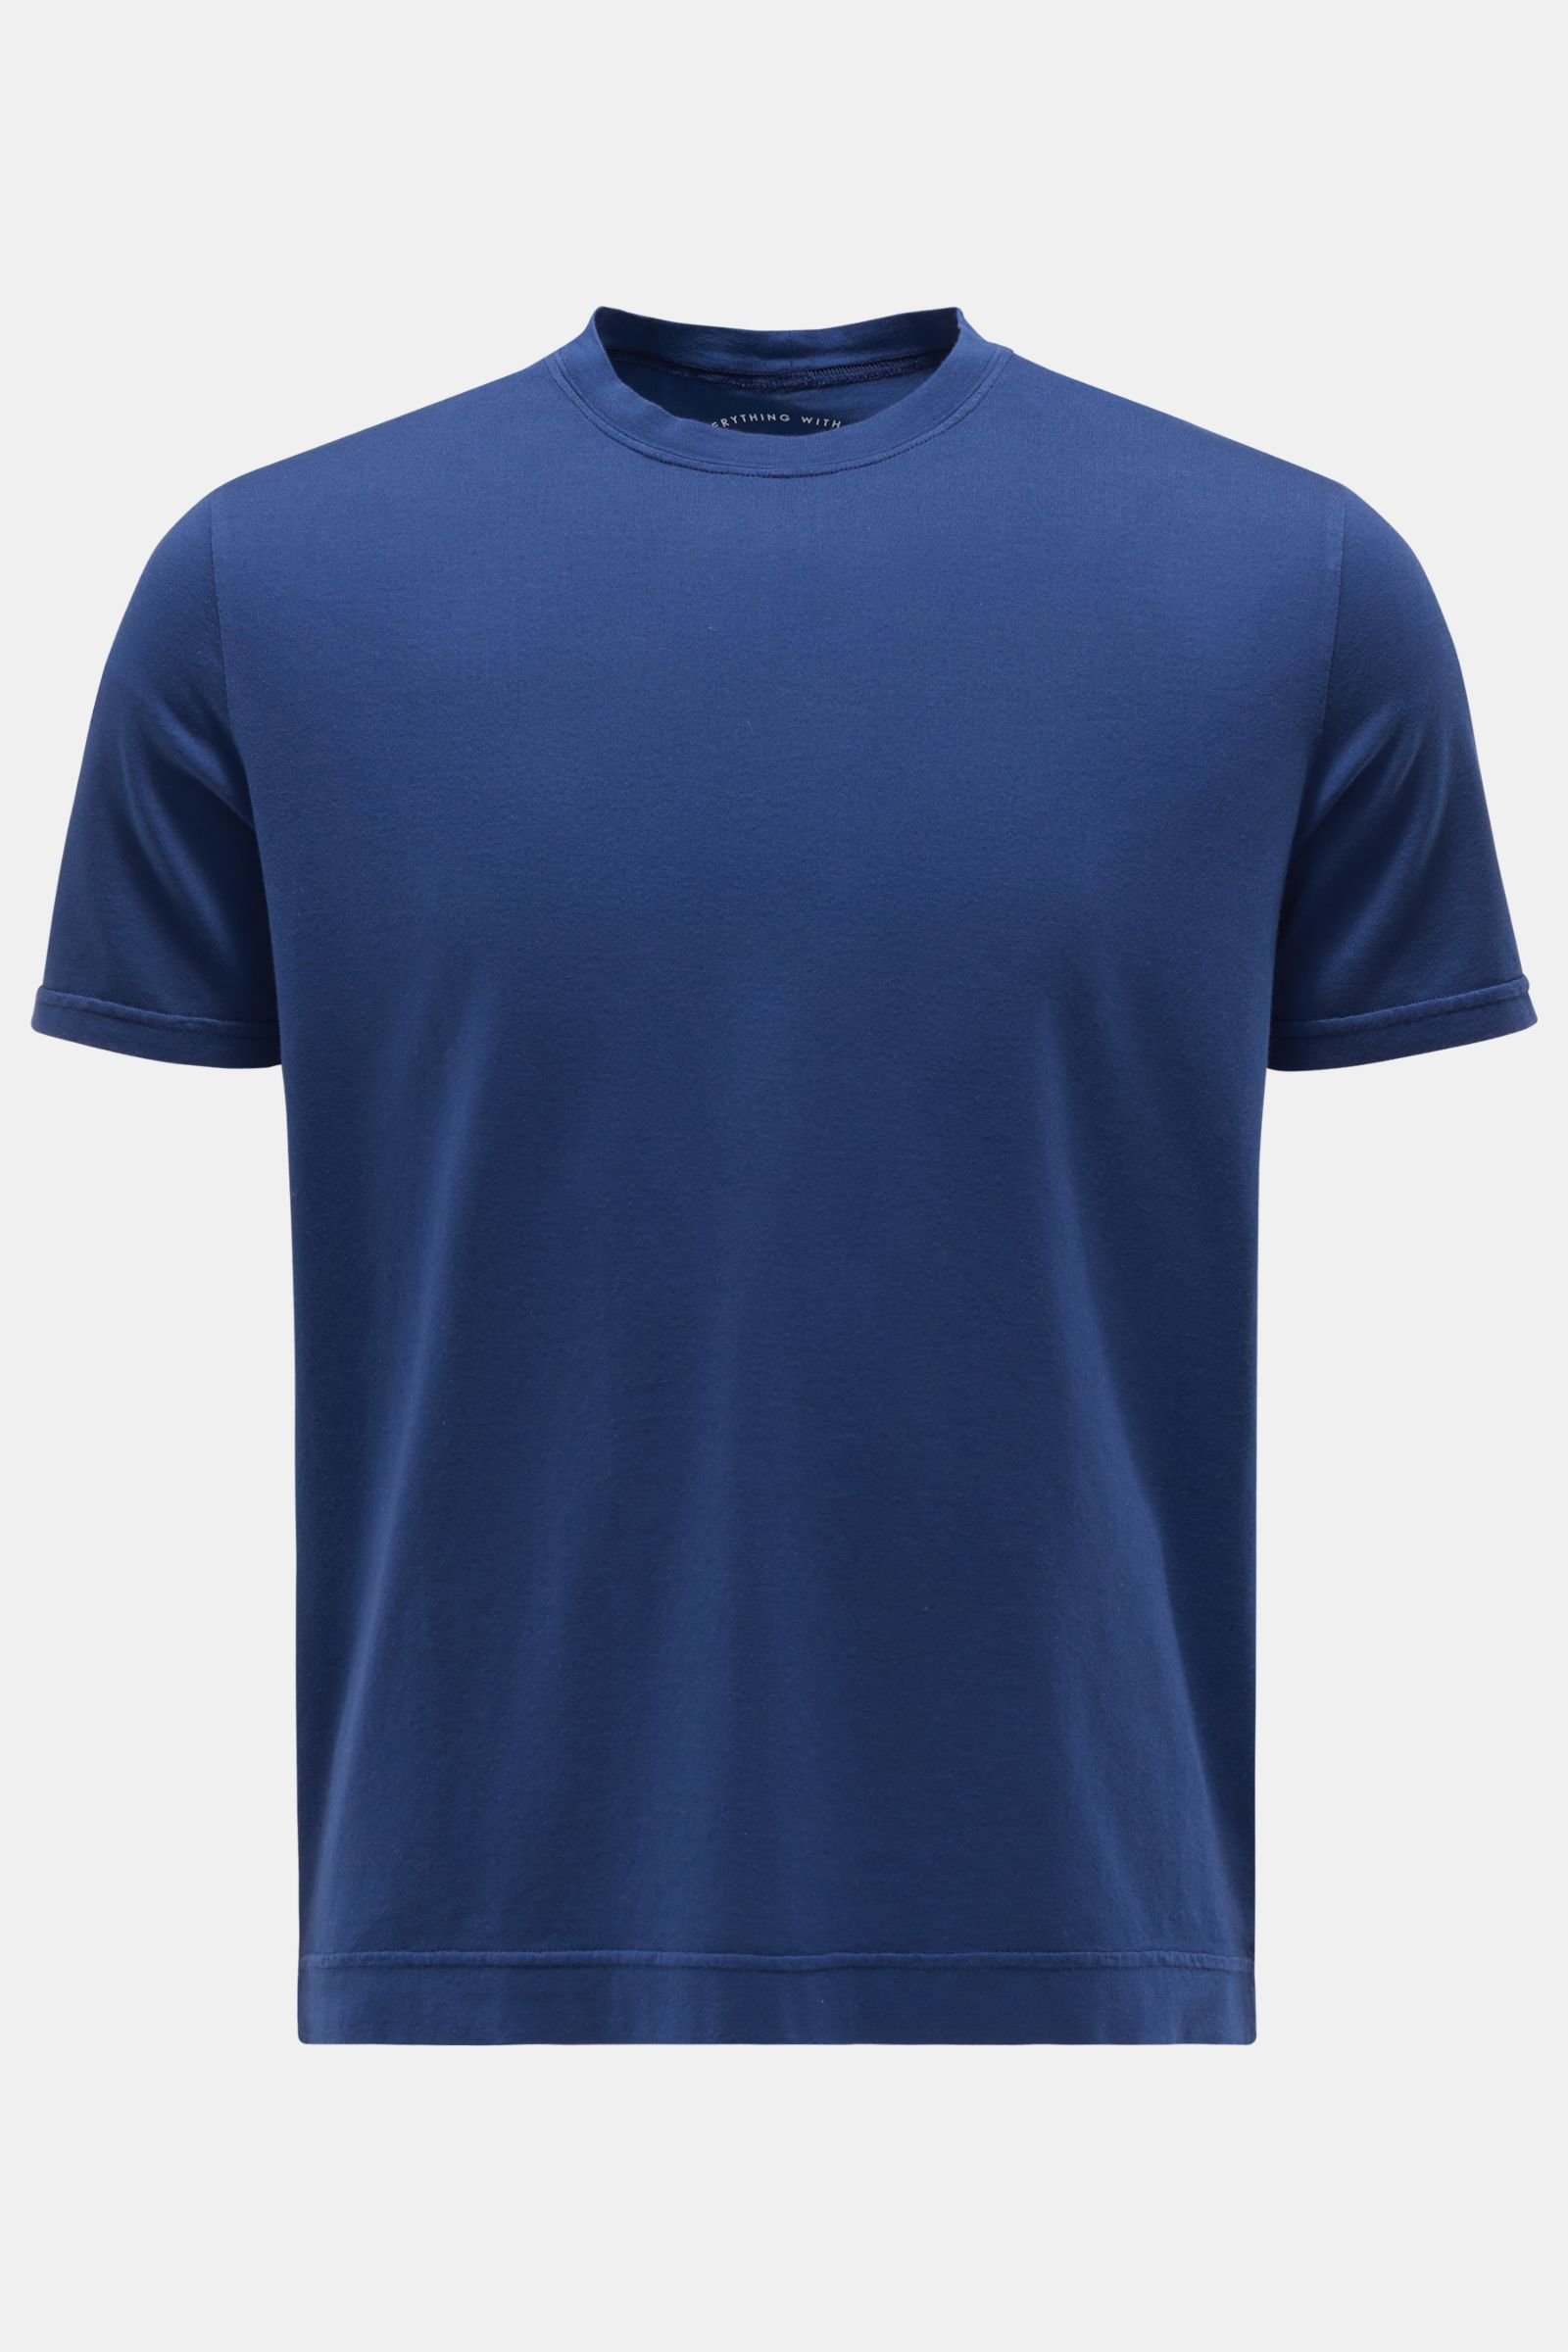 Crew neck T-shirt 'Extreme' dark blue